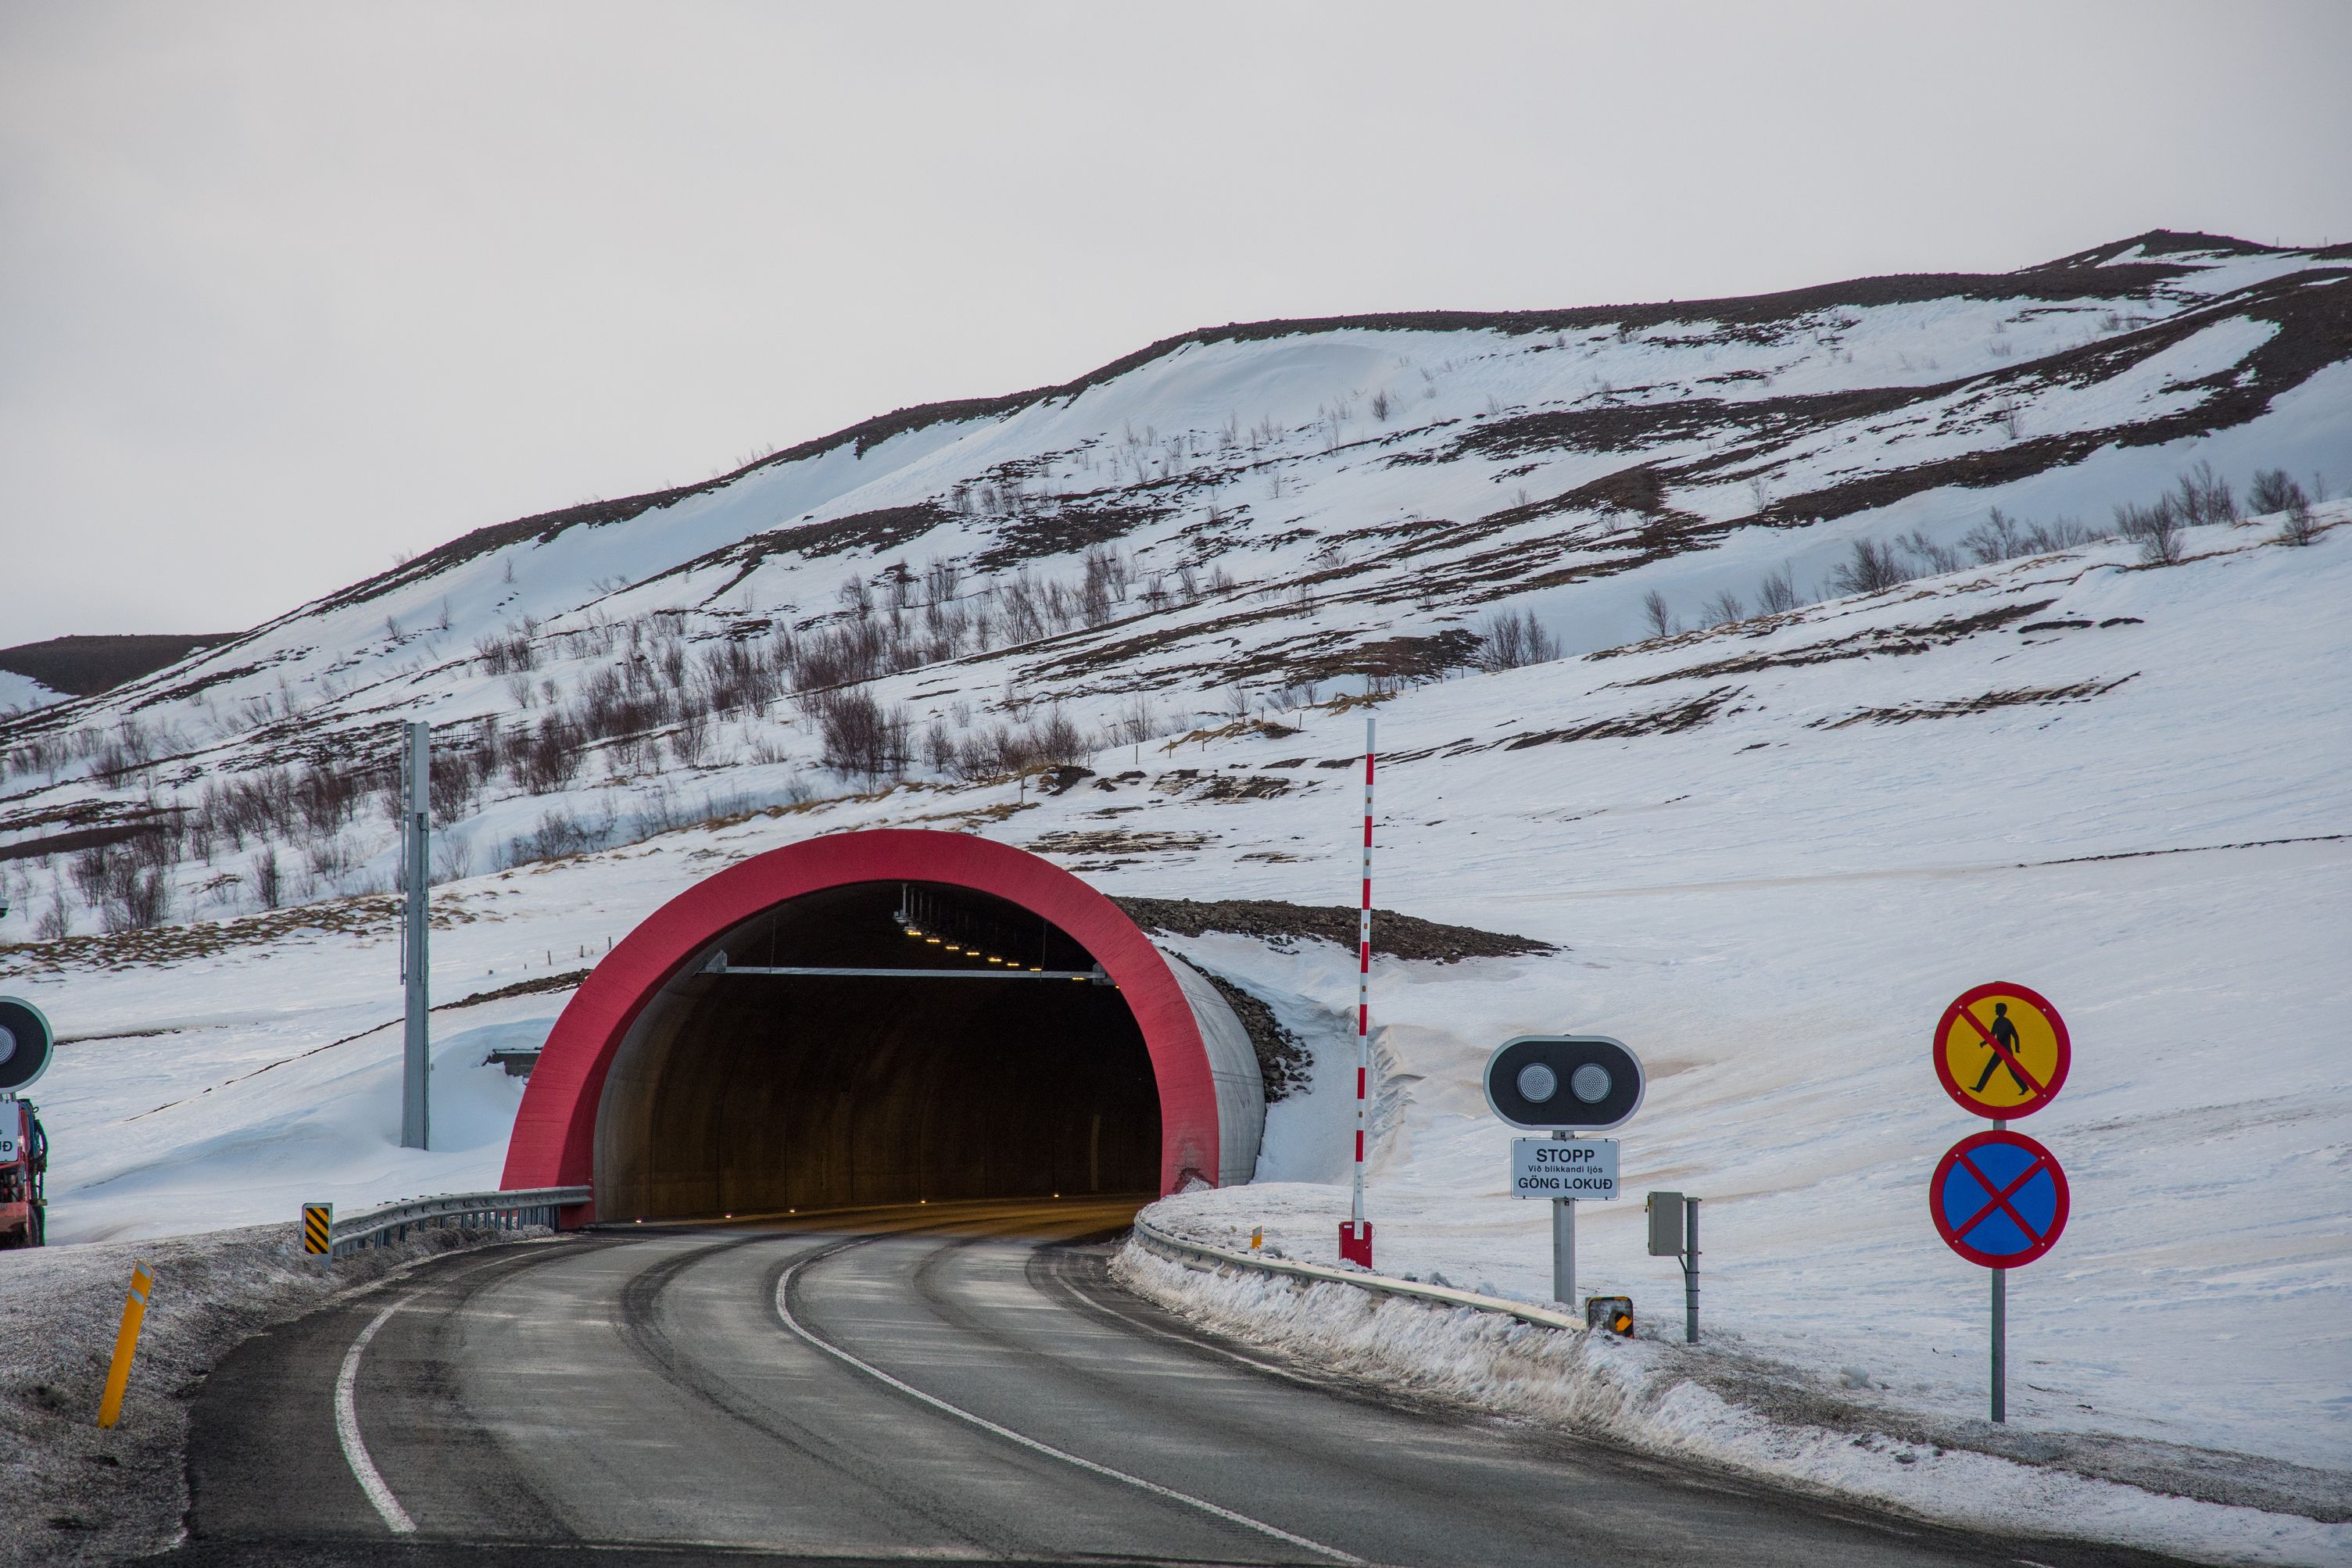 Vadlaheidi toll road tunnel in north Iceland of Akureyri